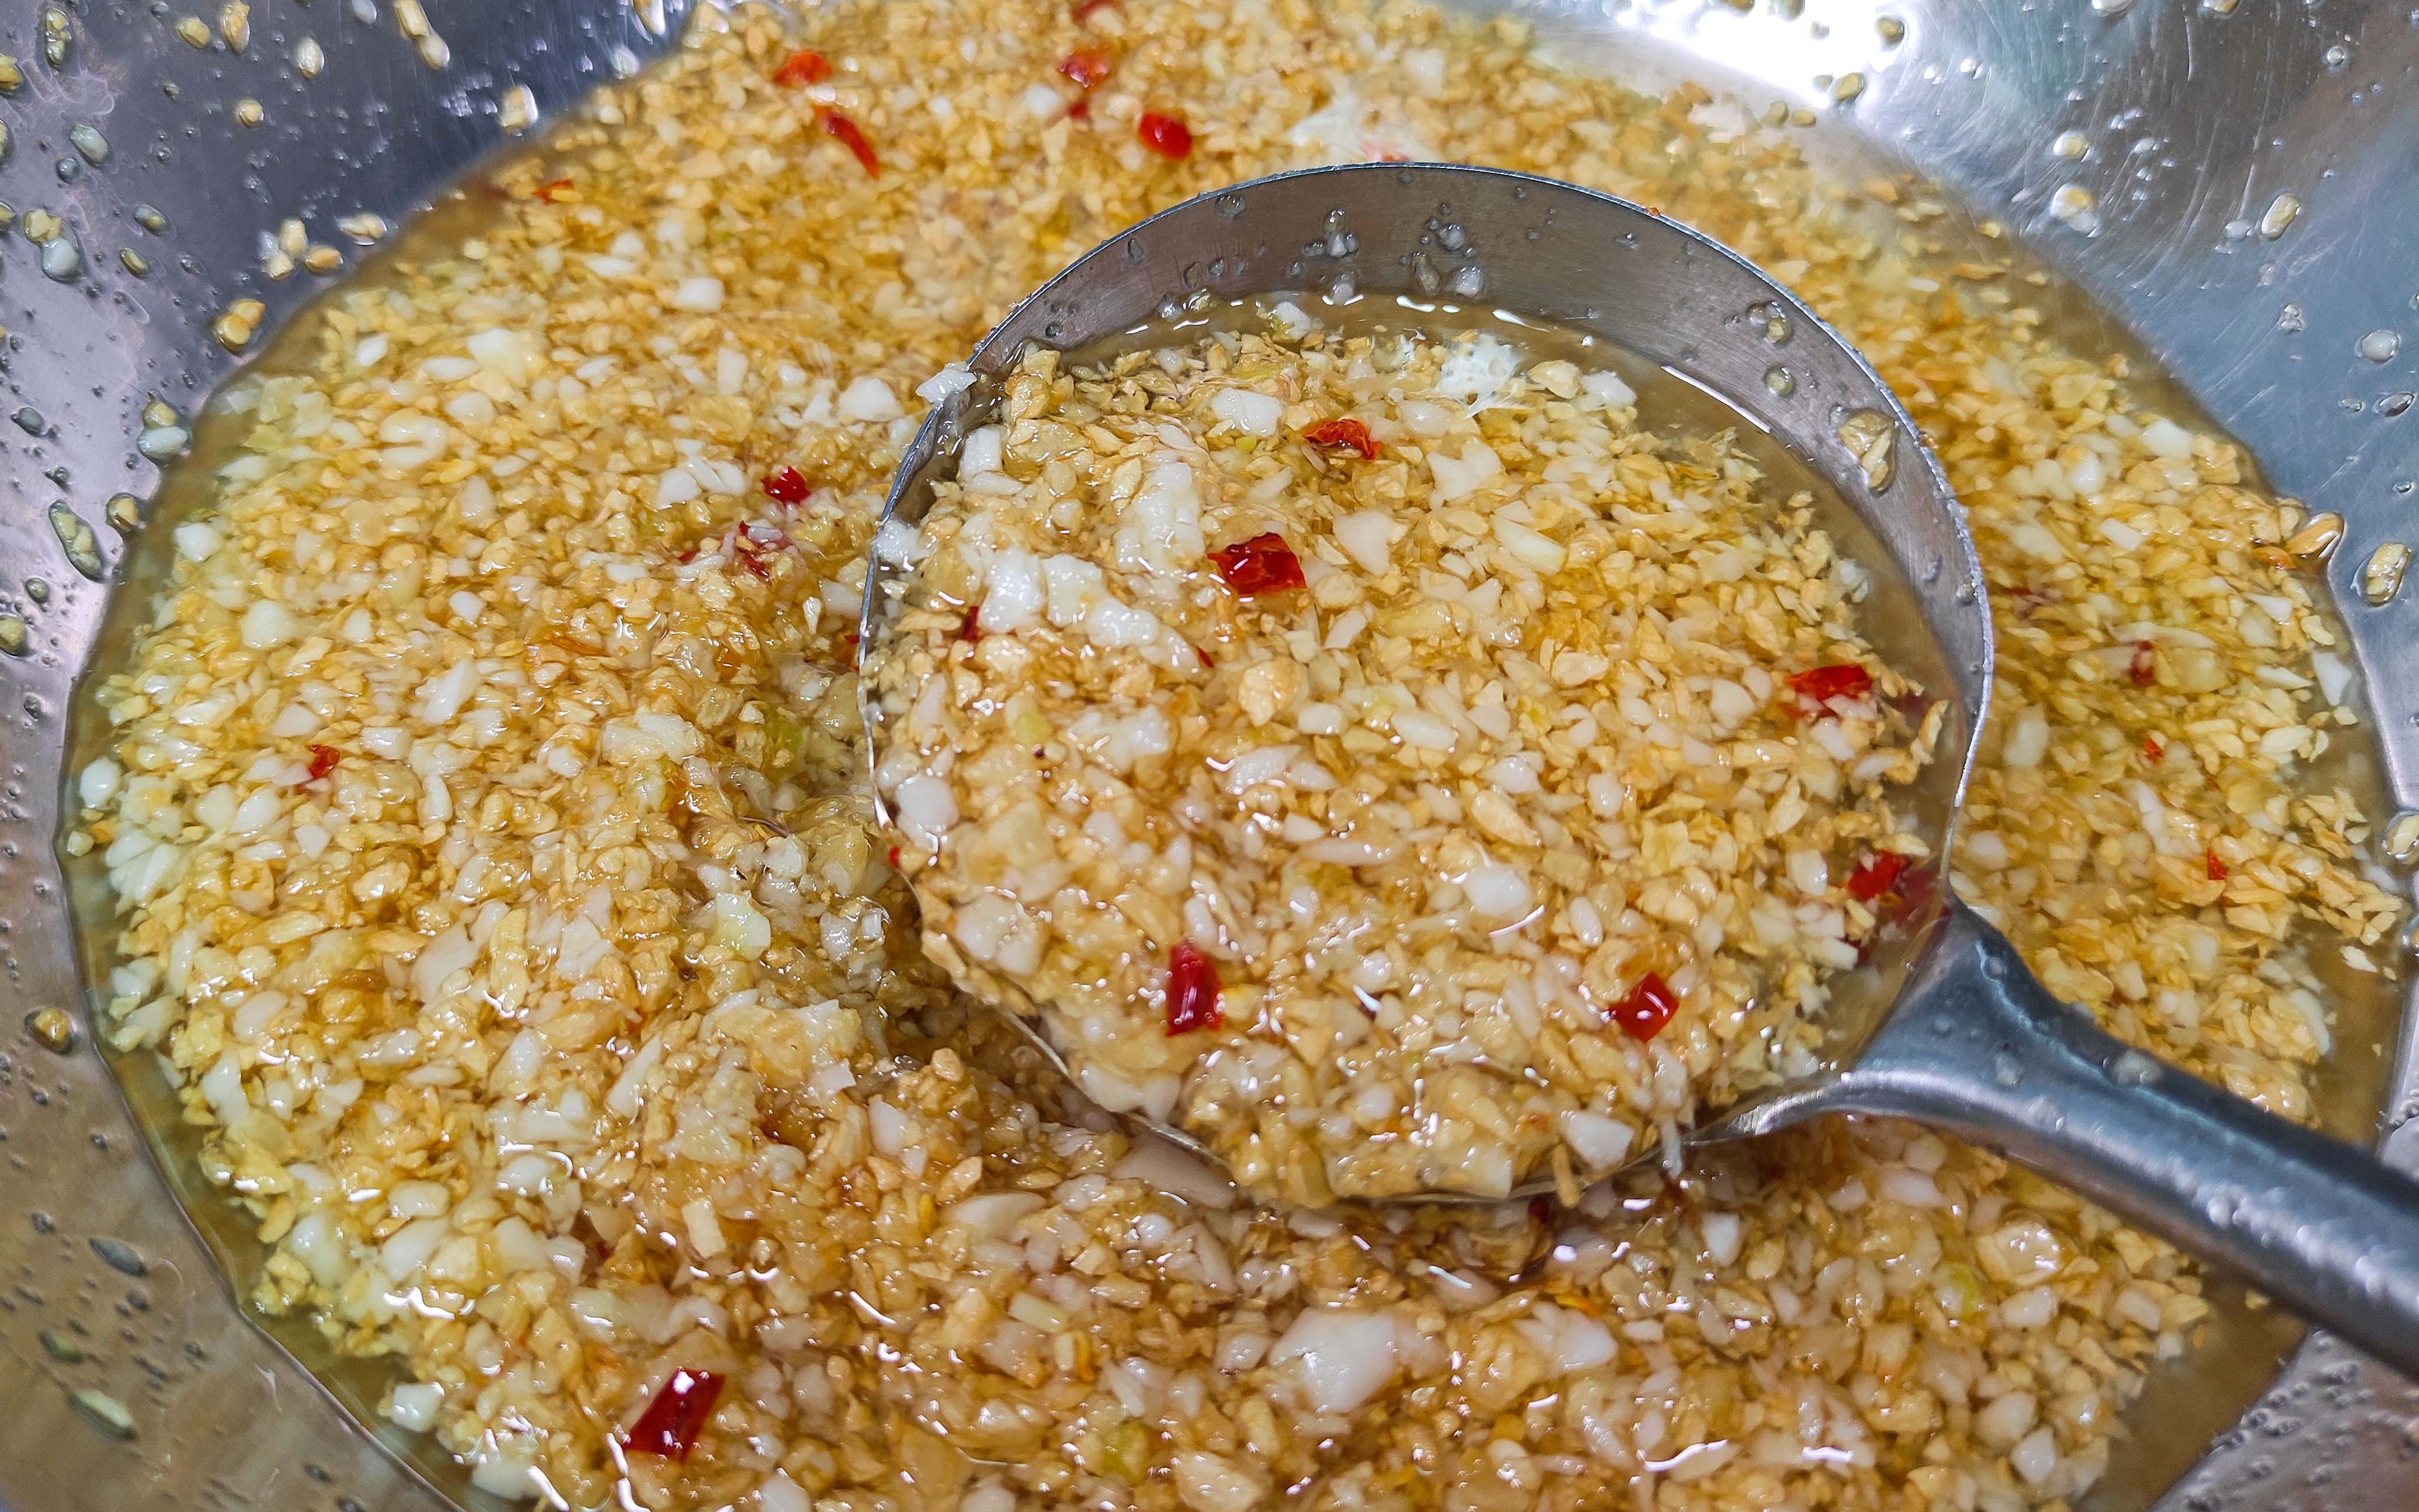 海南鸡饭姜蓉酱食谱（Minced ginger sauce for Hainanese Chicken Rice）